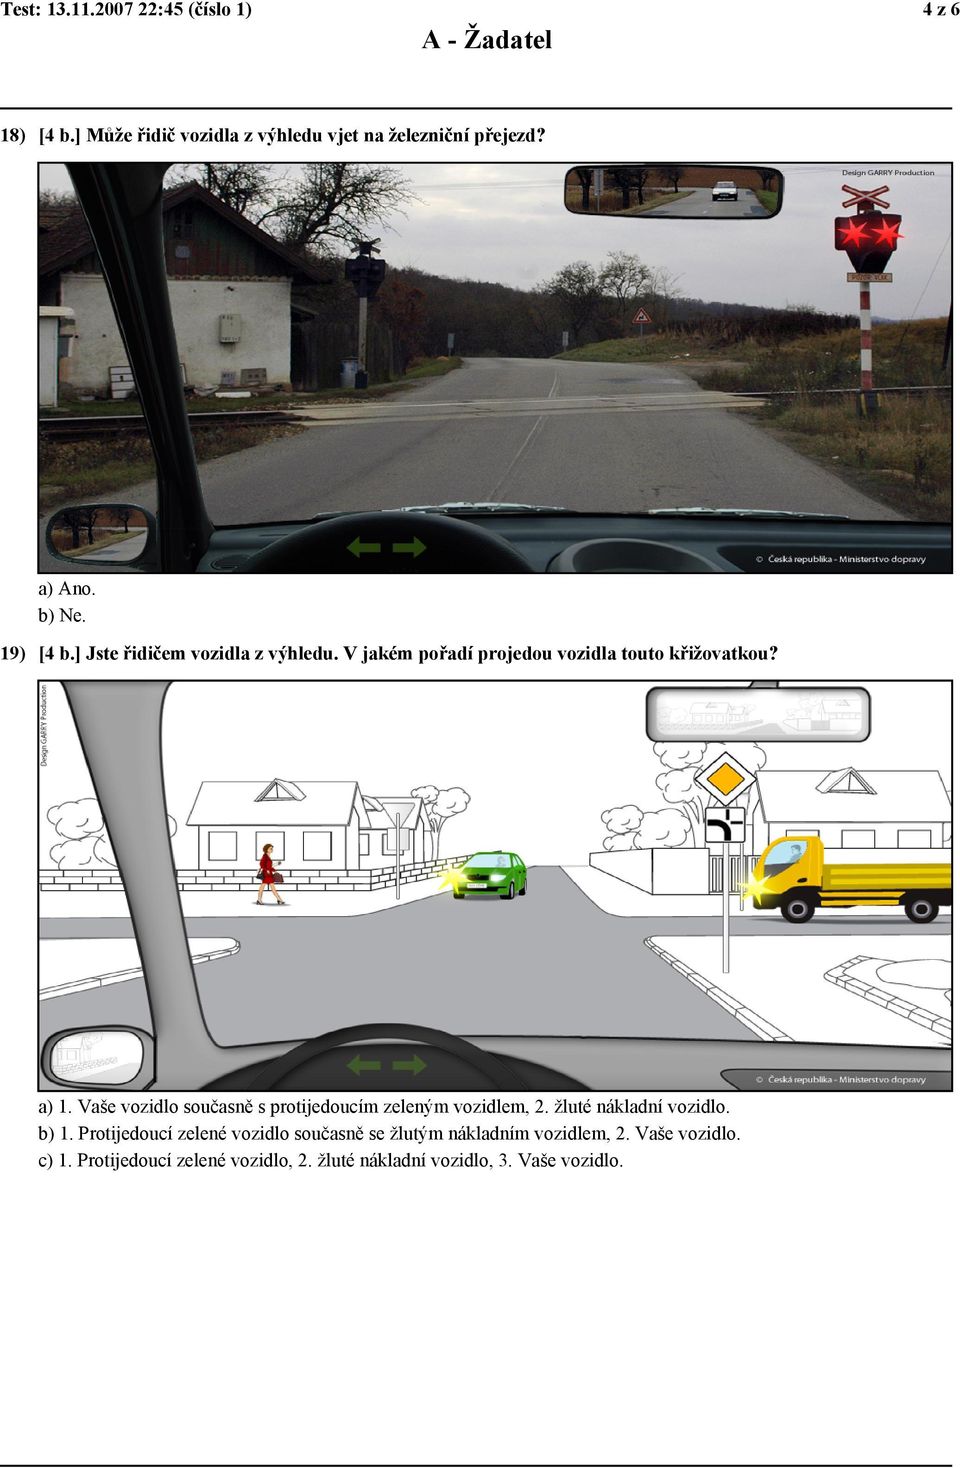 Vaše vozidlo současně s protijedoucím zeleným vozidlem, 2. žluté nákladní vozidlo. b) 1.